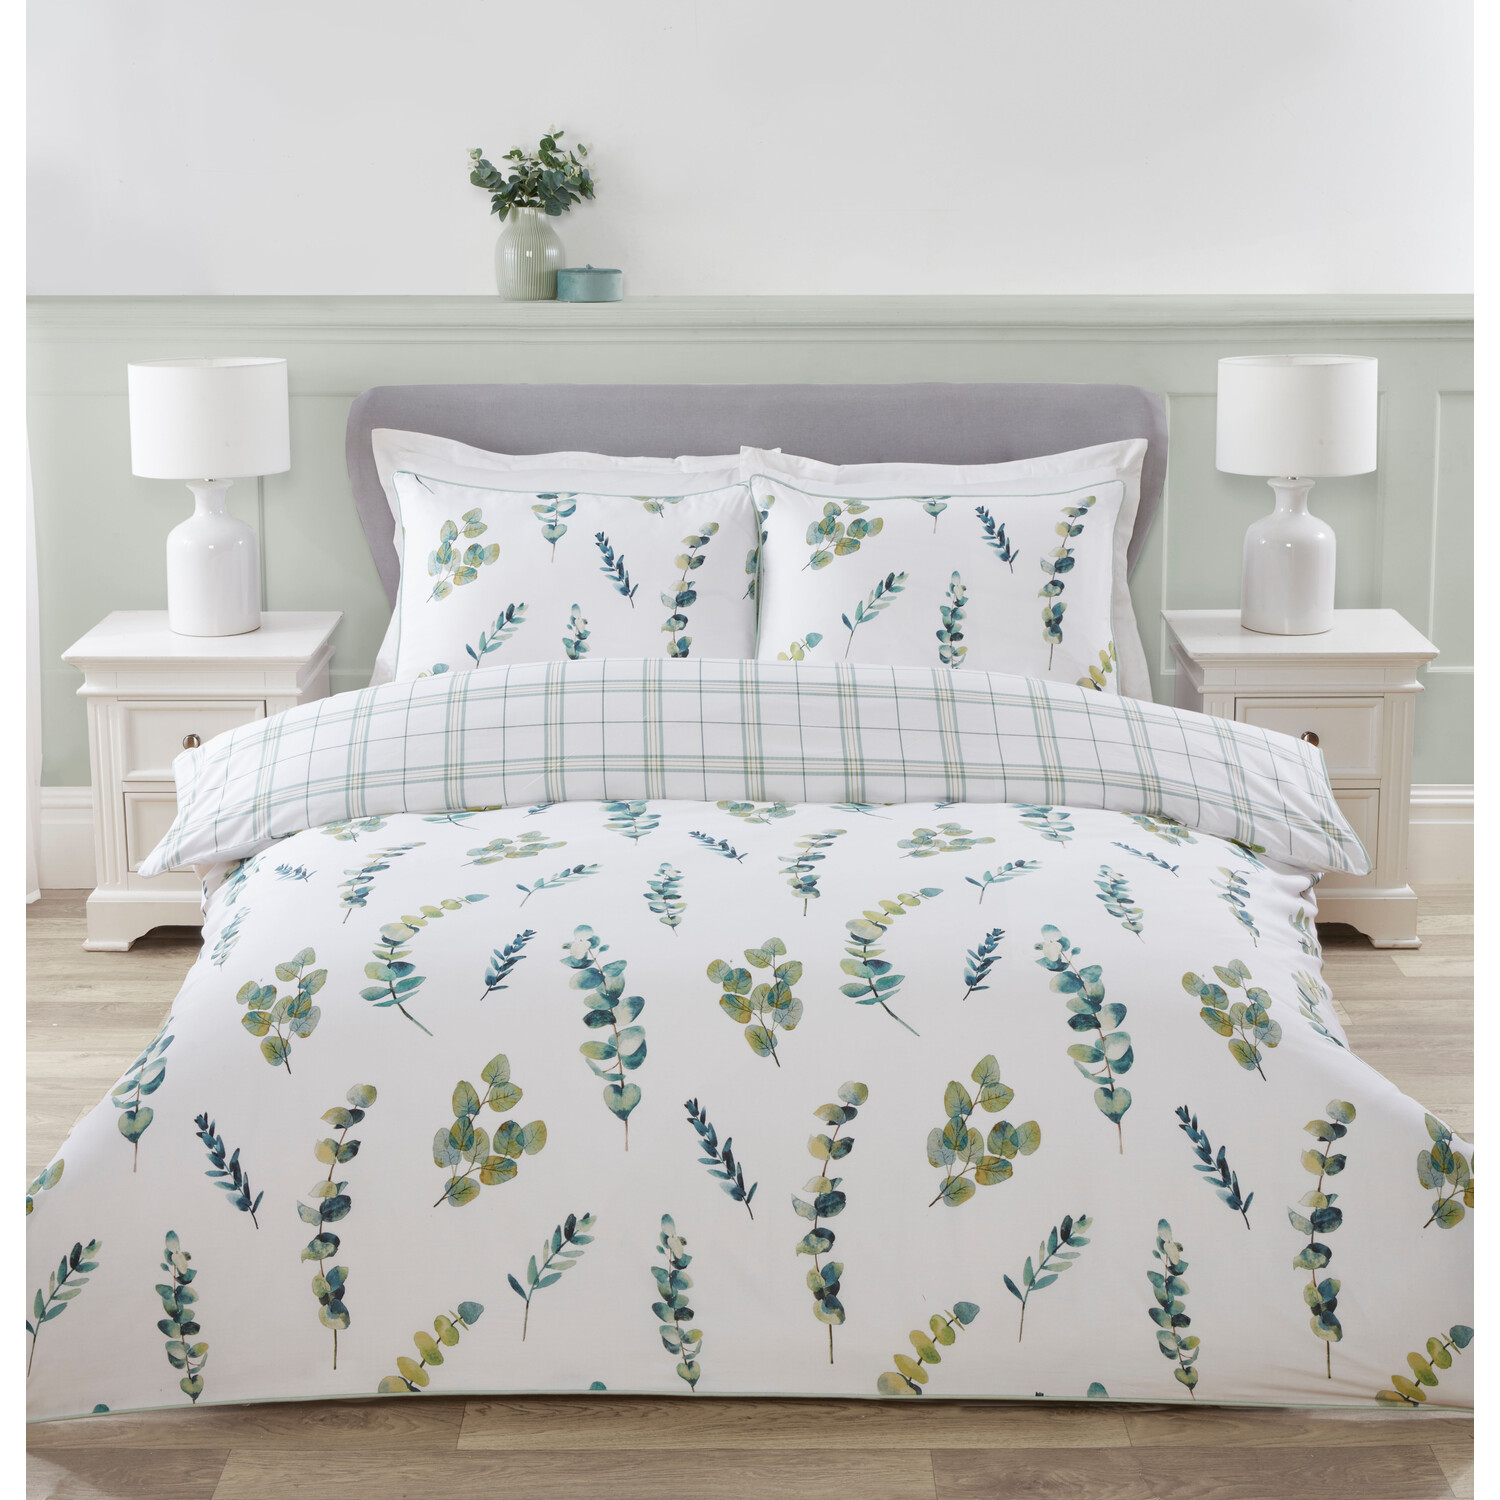 Divante King Size Green Eucalyptus Spray Duvet Cover and Pillowcase Set Image 1